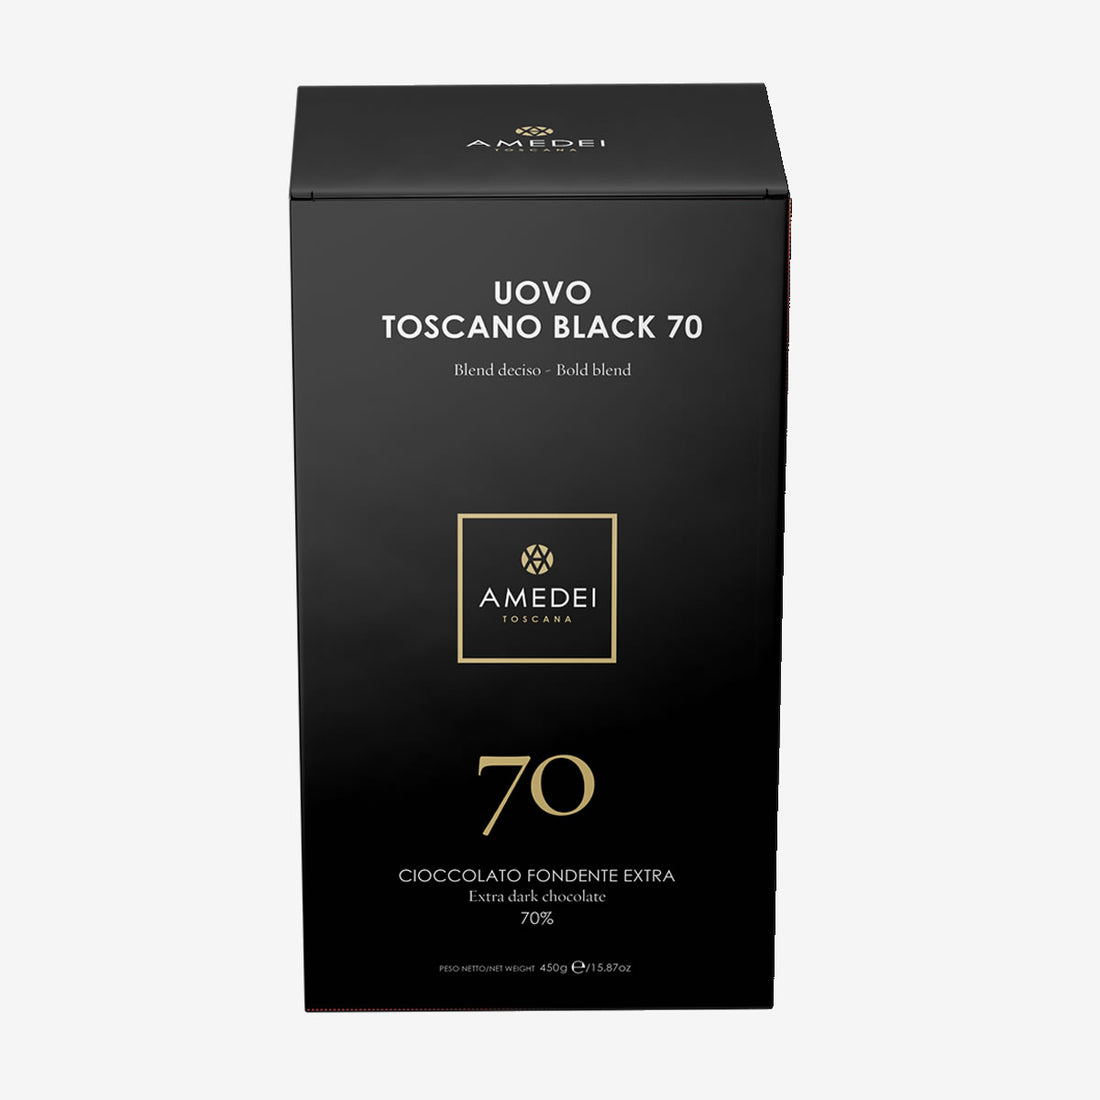 Uovo Toscano Black 70